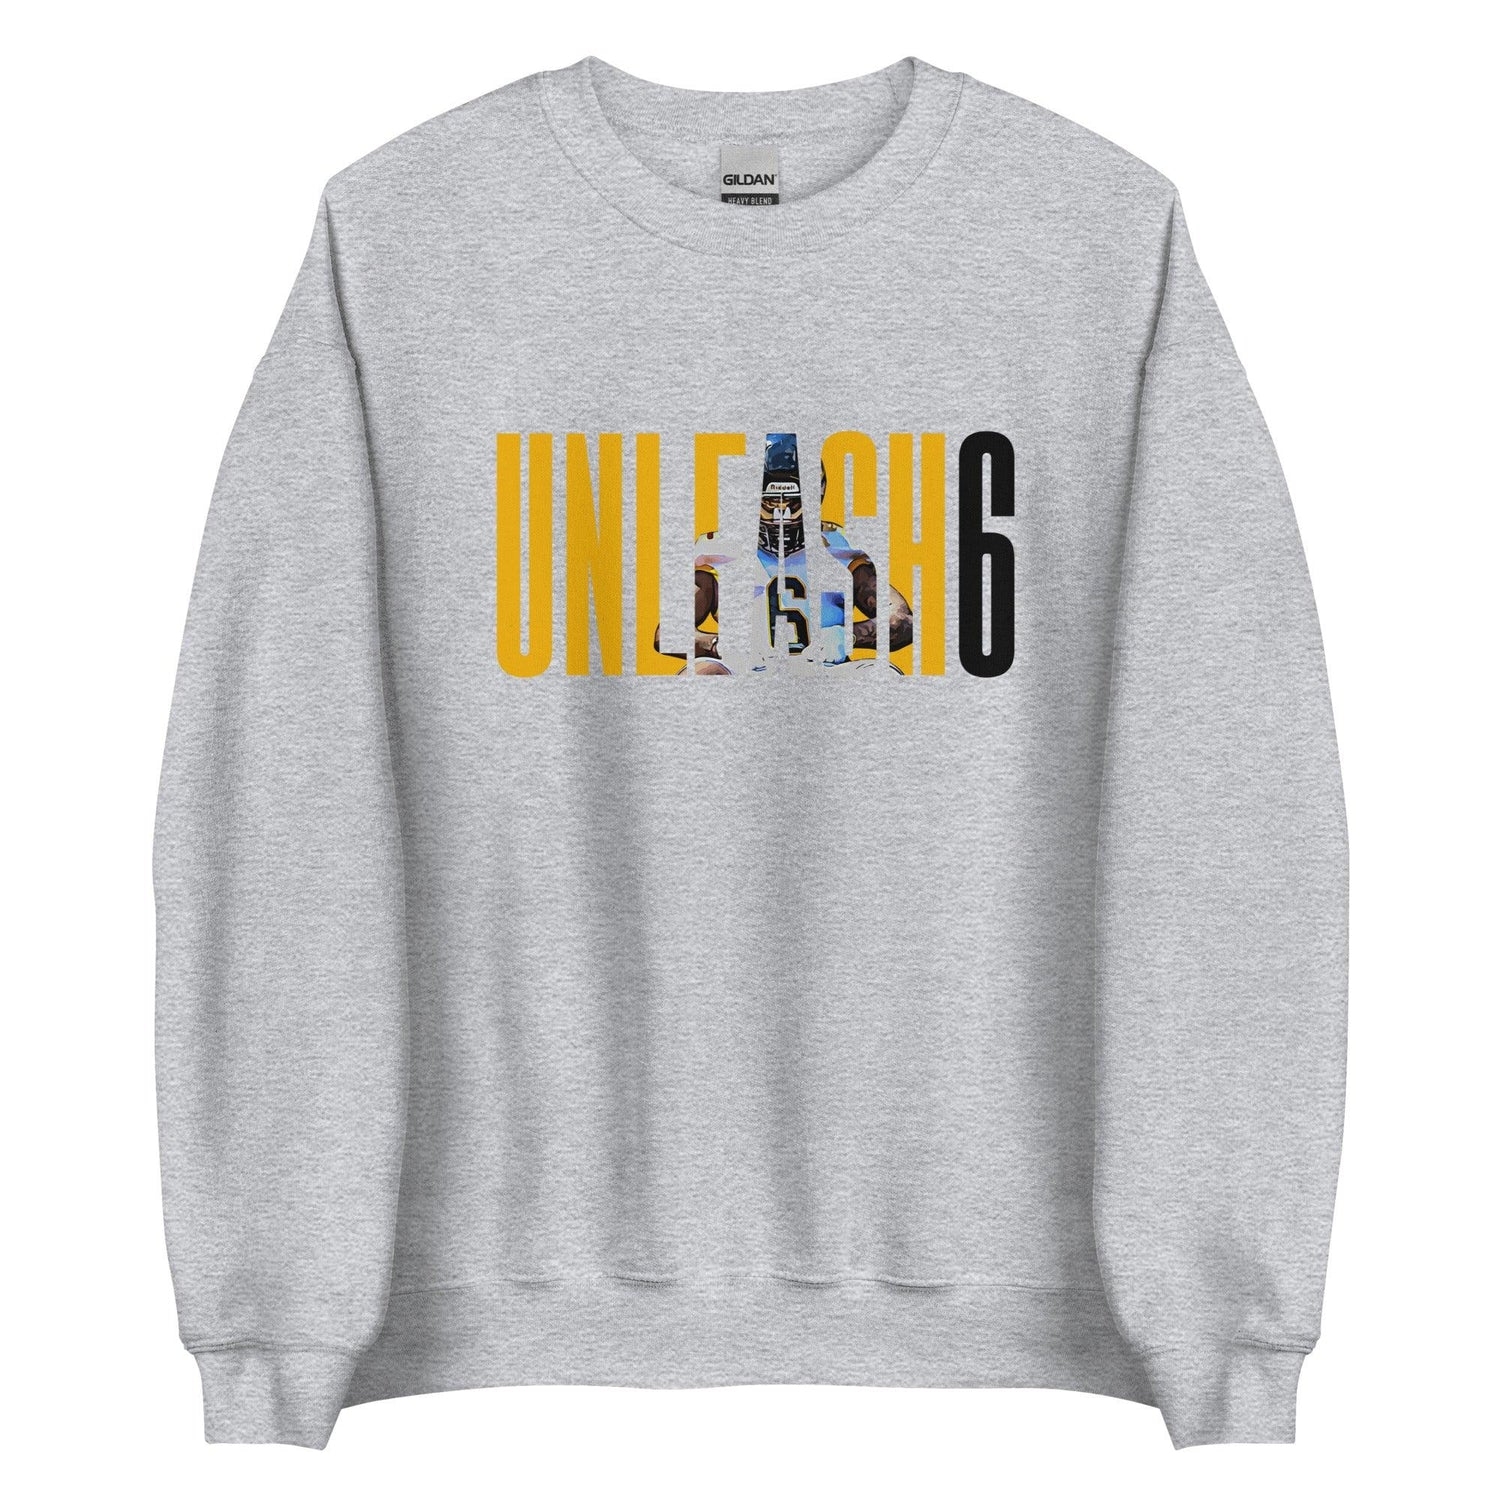 Dajon Richard "Unleash6" Sweatshirt - Fan Arch